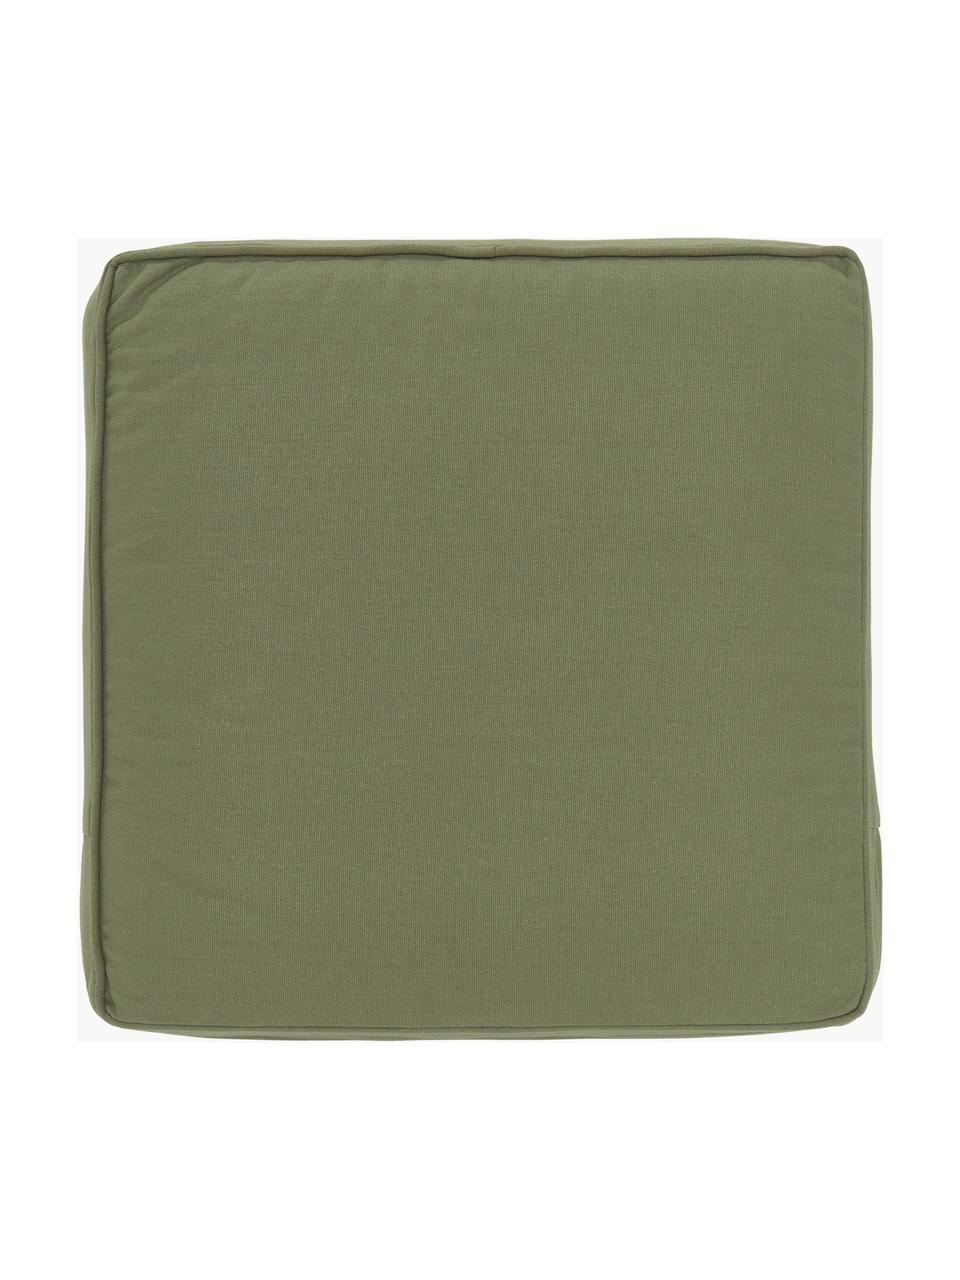 Wysoka poduszka na krzesło Zoey, 2 szt., Tapicerka: 100% bawełna, Oliwkowy zielony, S 40 x D 40 cm